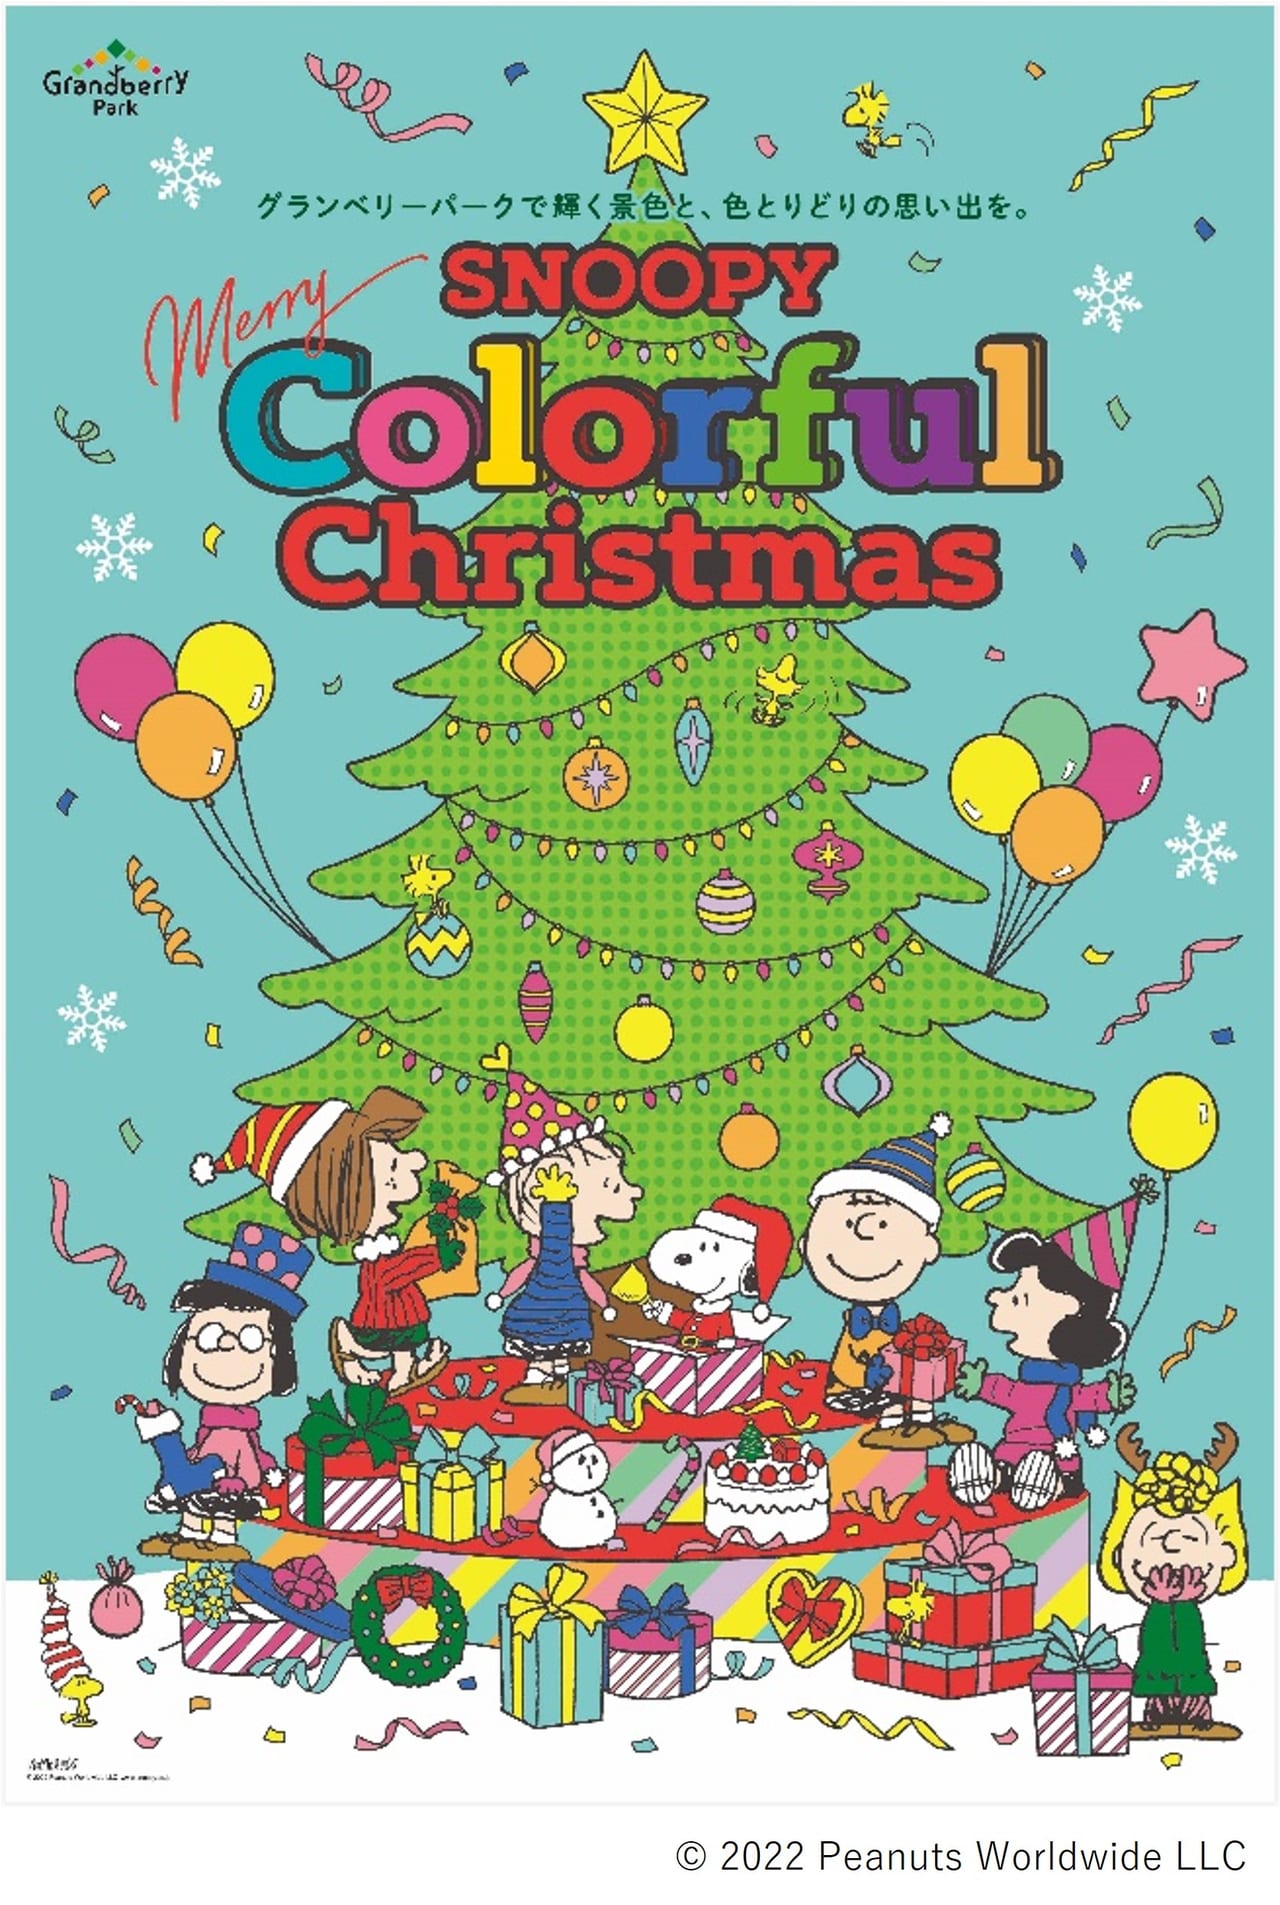 南町田グランベリーパークSNOOPY Merry Colorful Christmas②